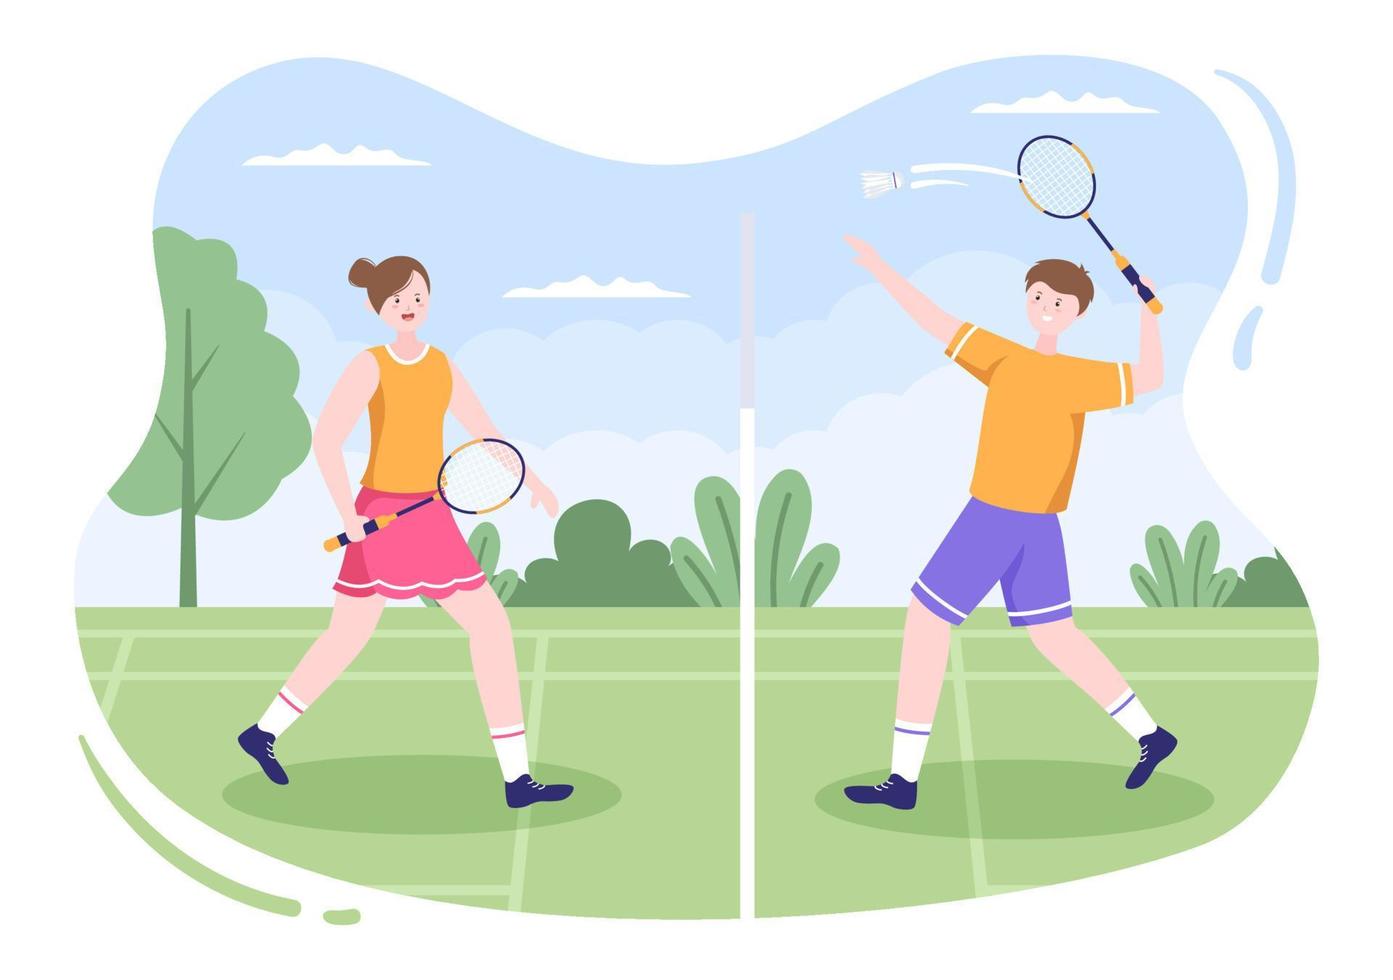 giocatore di badminton con navetta in campo in stile cartone animato piatto. felice gioco di sport e design per il tempo libero vettore